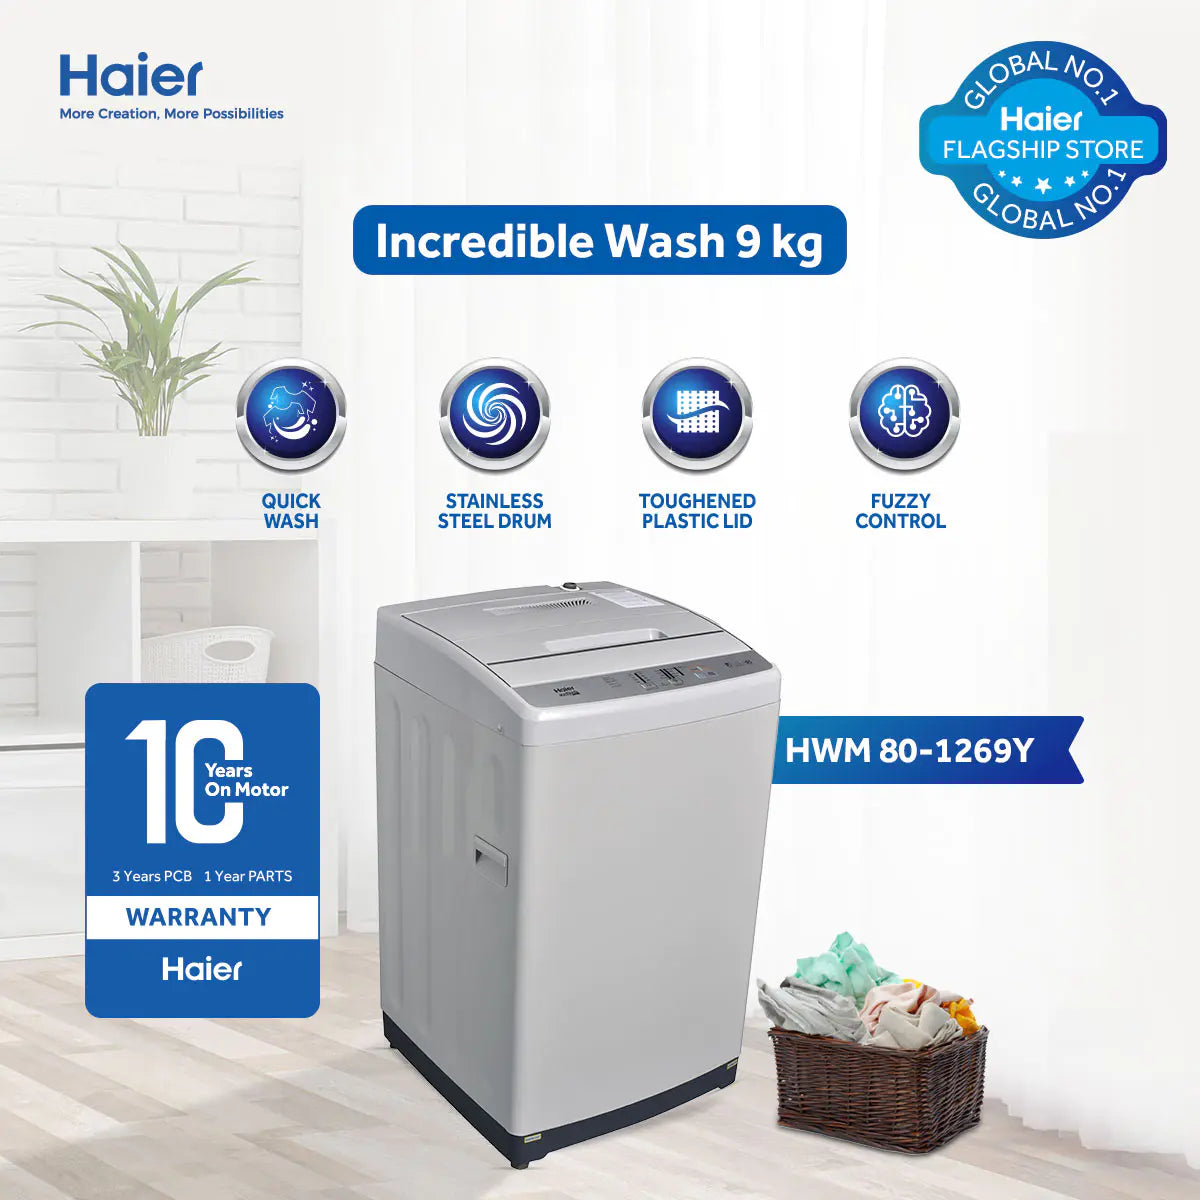 Haier -HWM 80-1269Y Fully Automatic Washing Machine 9kg | Top Loading Washing Machine | 10 Years Warranty.